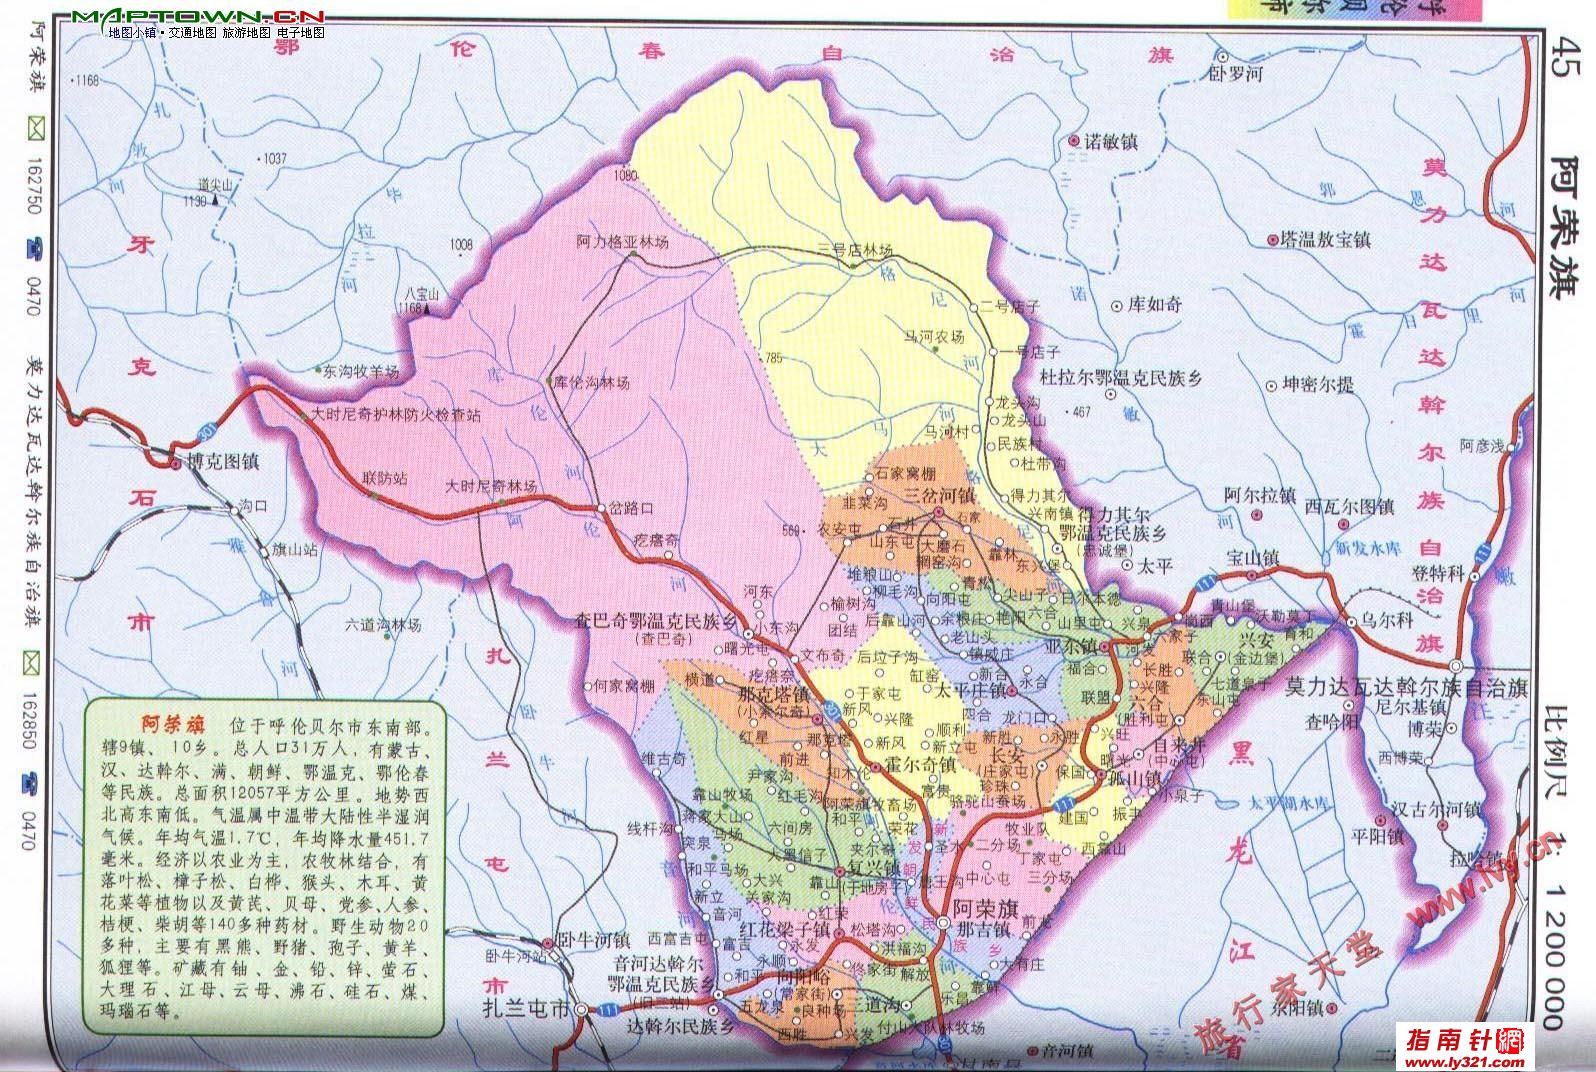 呼伦贝尔 内蒙古/内蒙古呼伦贝尔阿荣旗区划交通地图